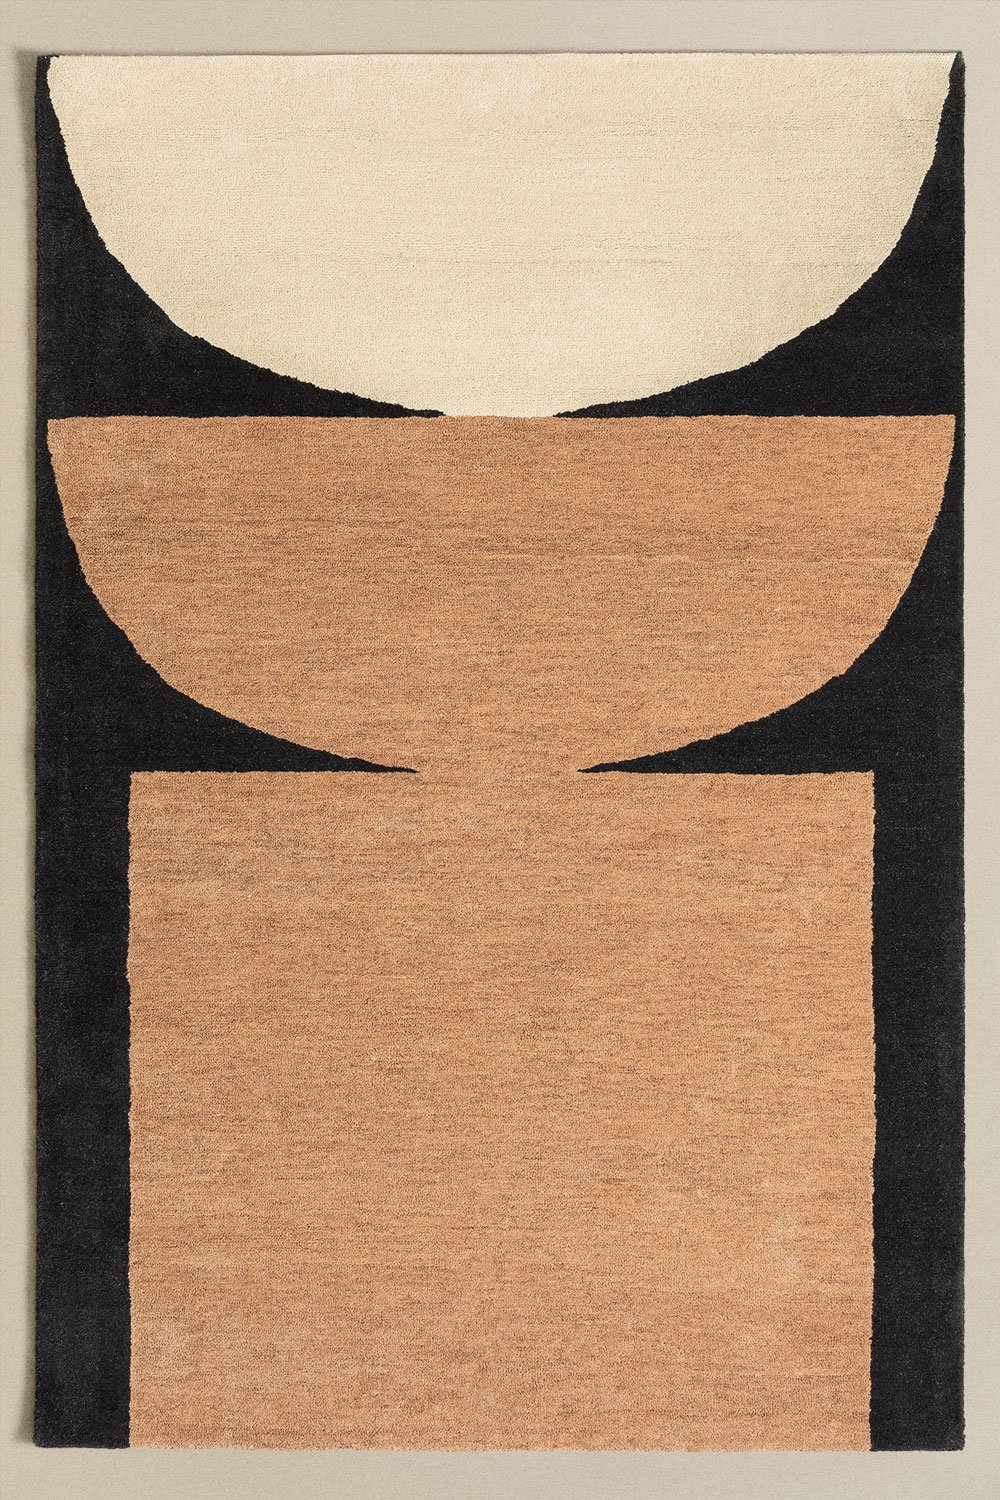 Vloerkleed van wol en katoen (240x160 cm) Aiden, galerij beeld 1